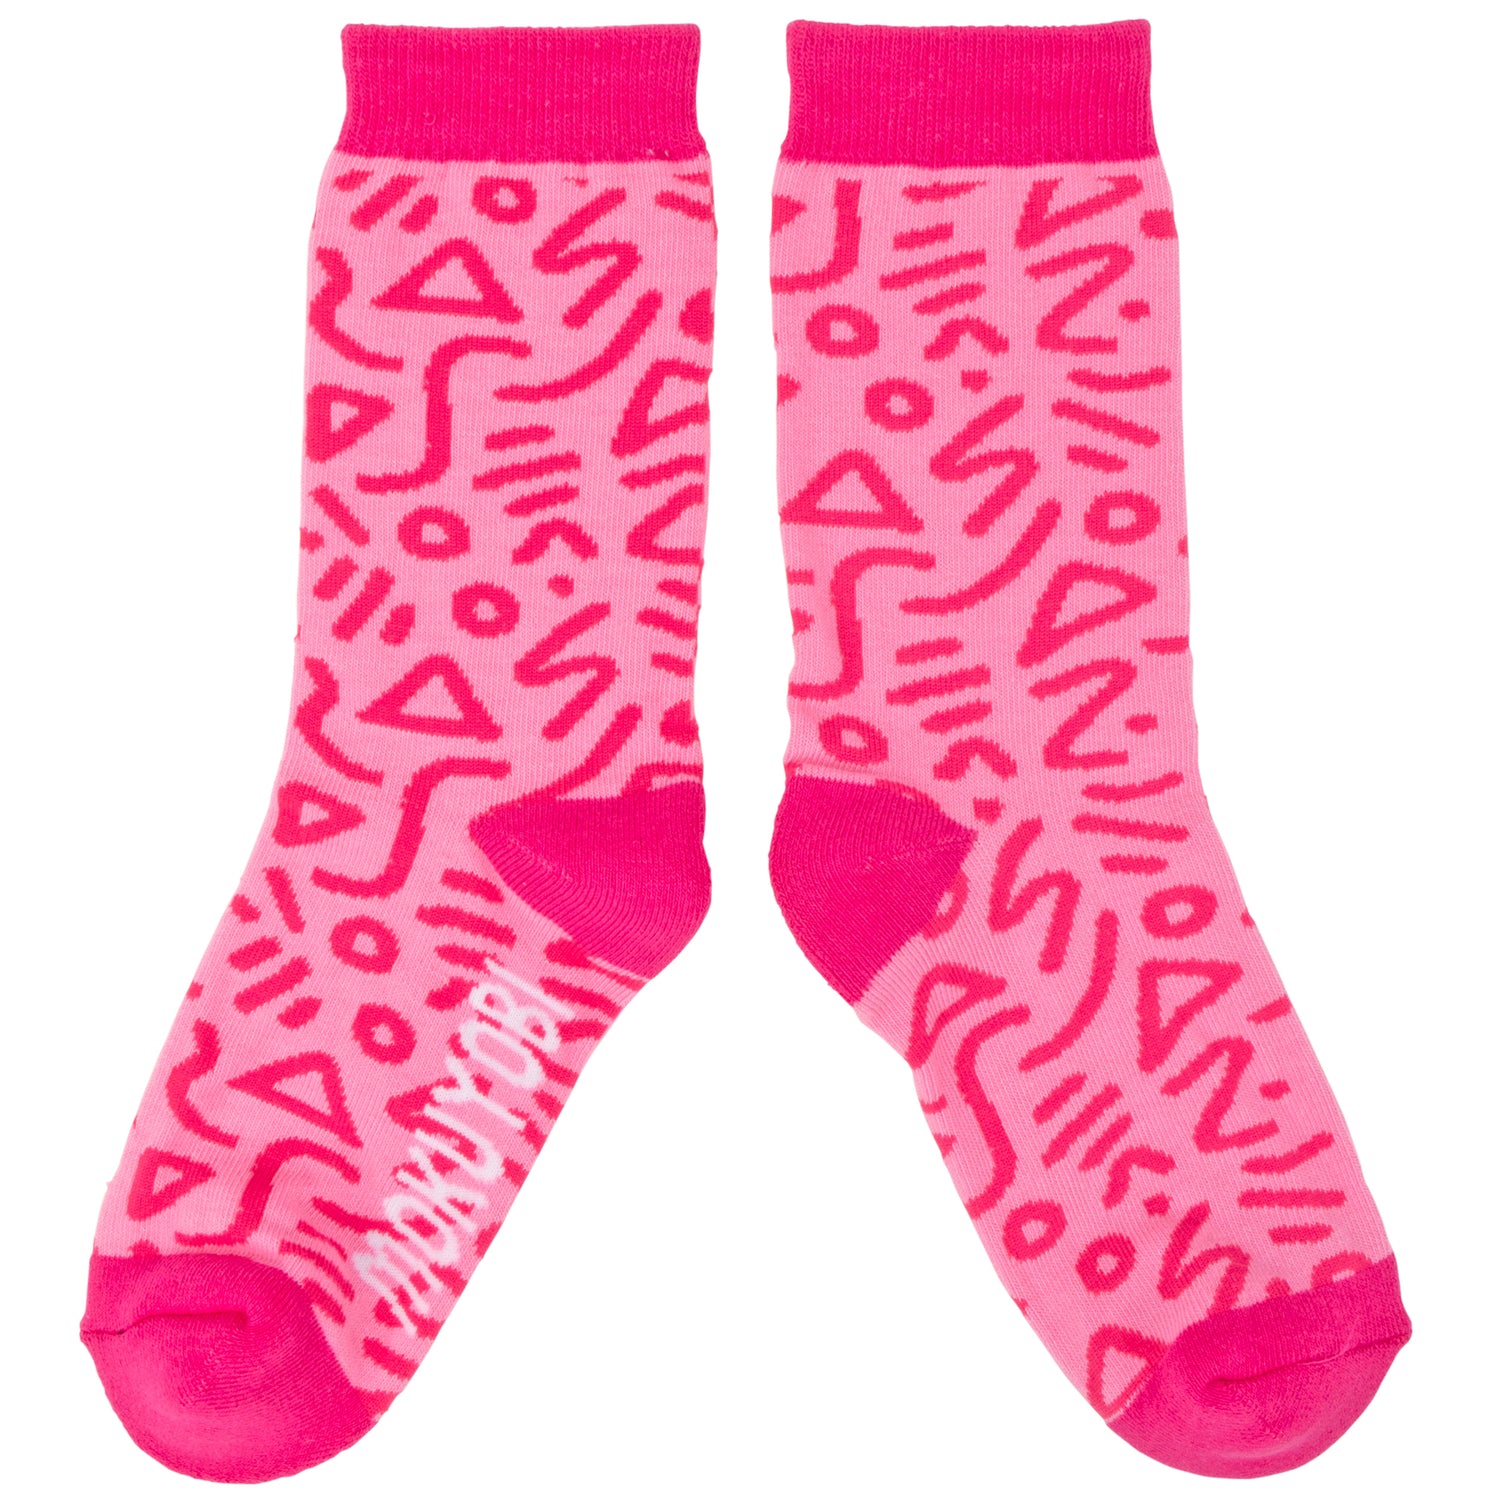 Raspberry Zap Socks